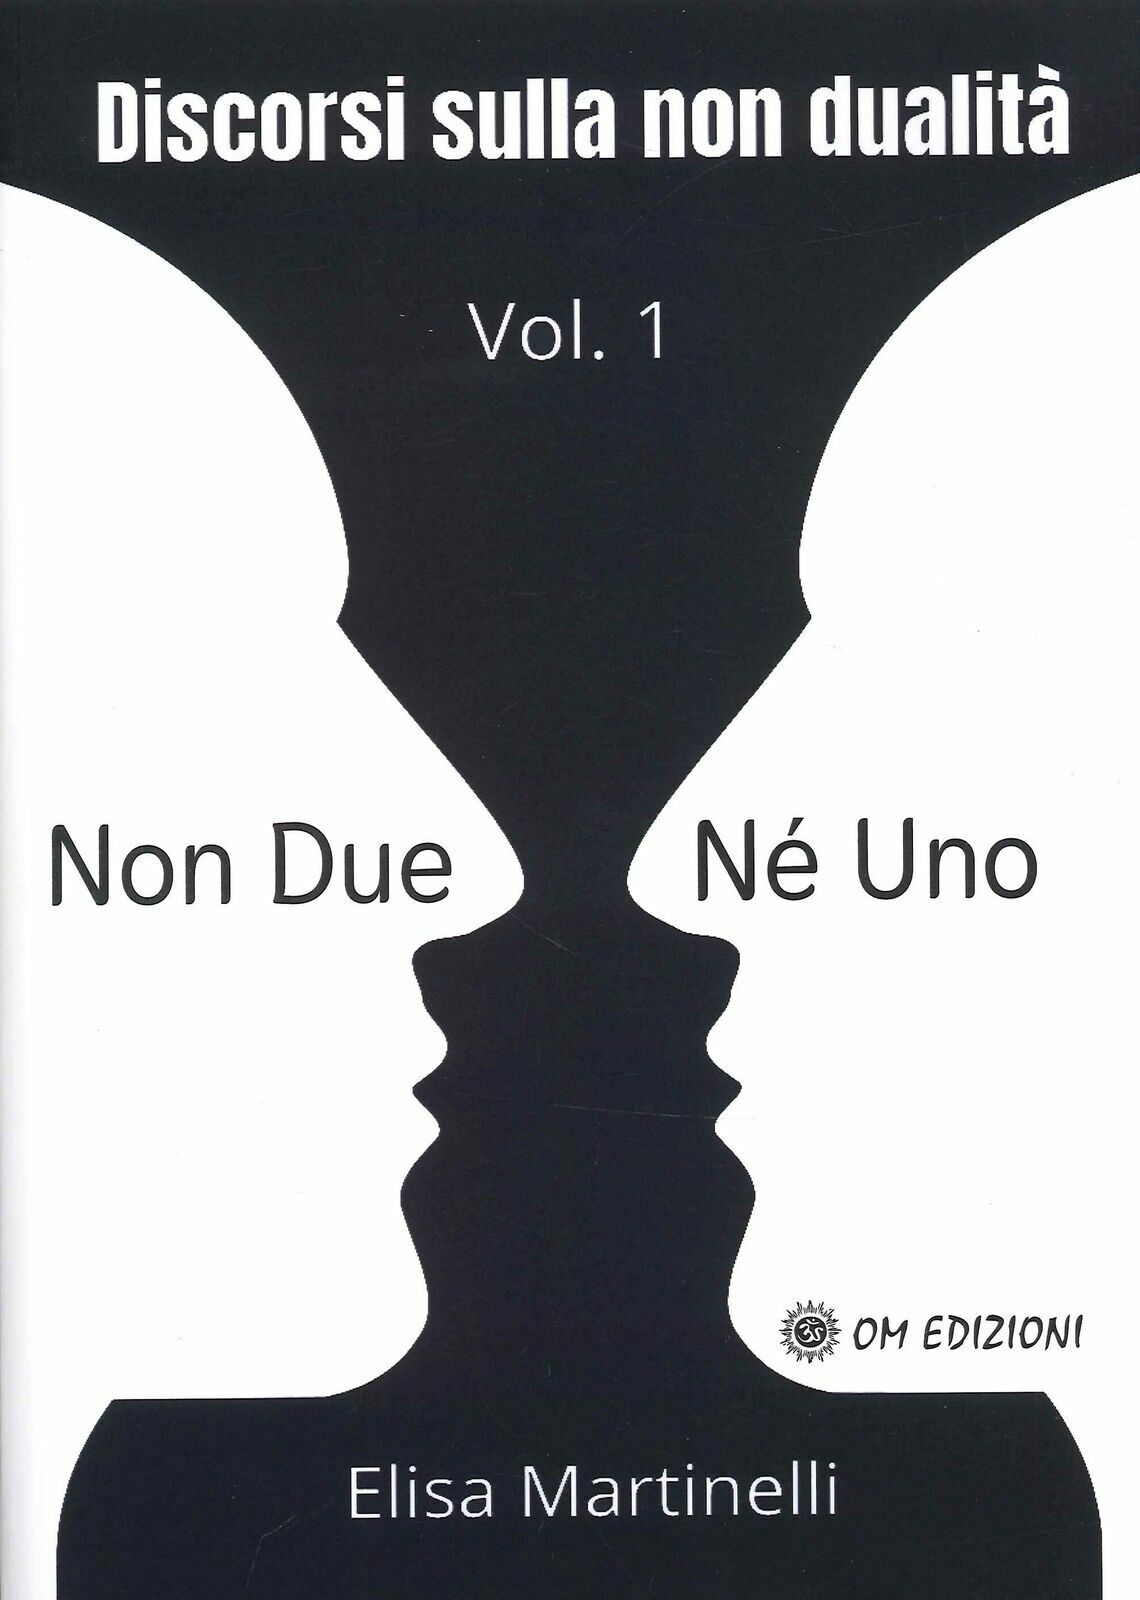 Non Due n? Uno Vol. 1 - Discorsi sulla non Dualit? di Elisa Martinelli,  2021,   libro usato